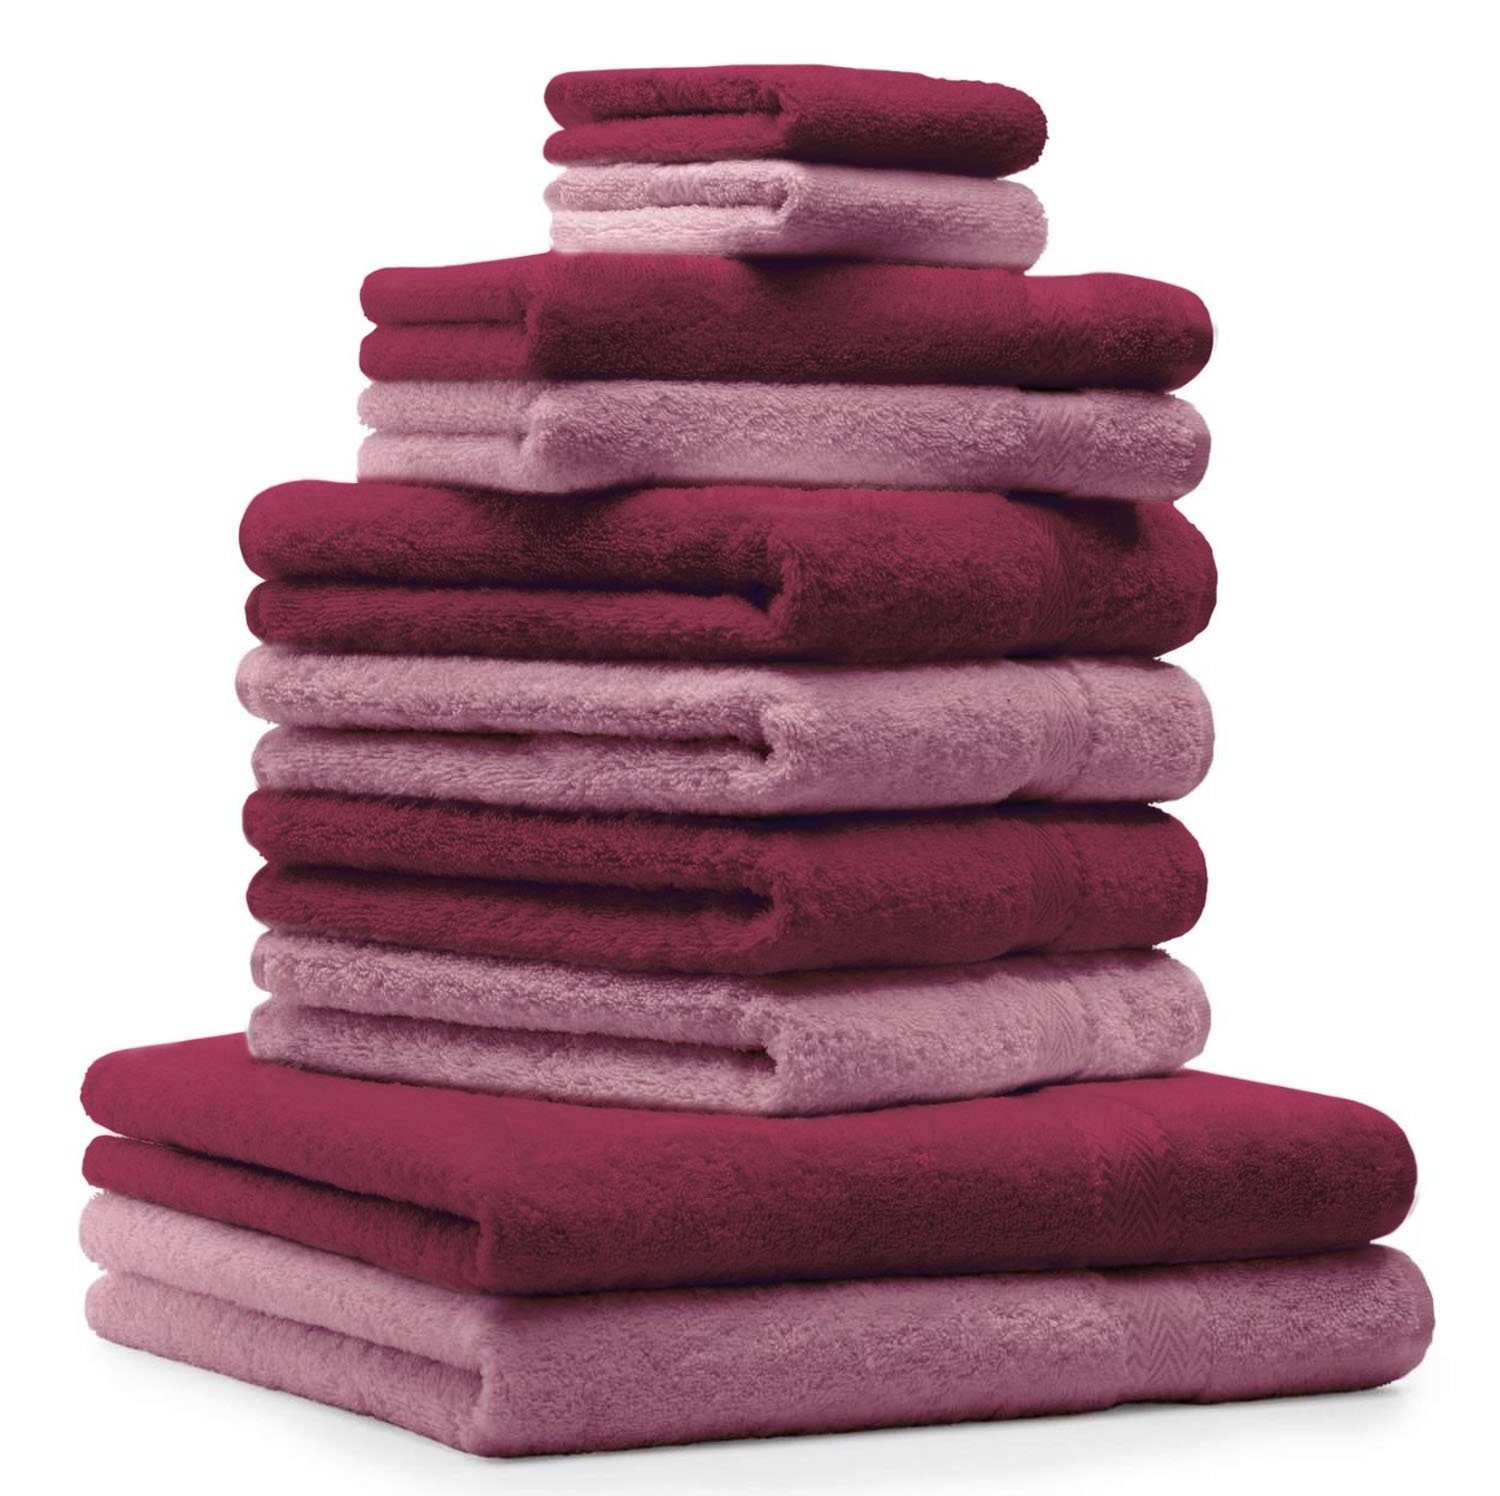 Betz Handtuch Set 10-TLG. Handtuch-Set Classic Farbe altrosa und dunkelrot, 100% Baumwolle